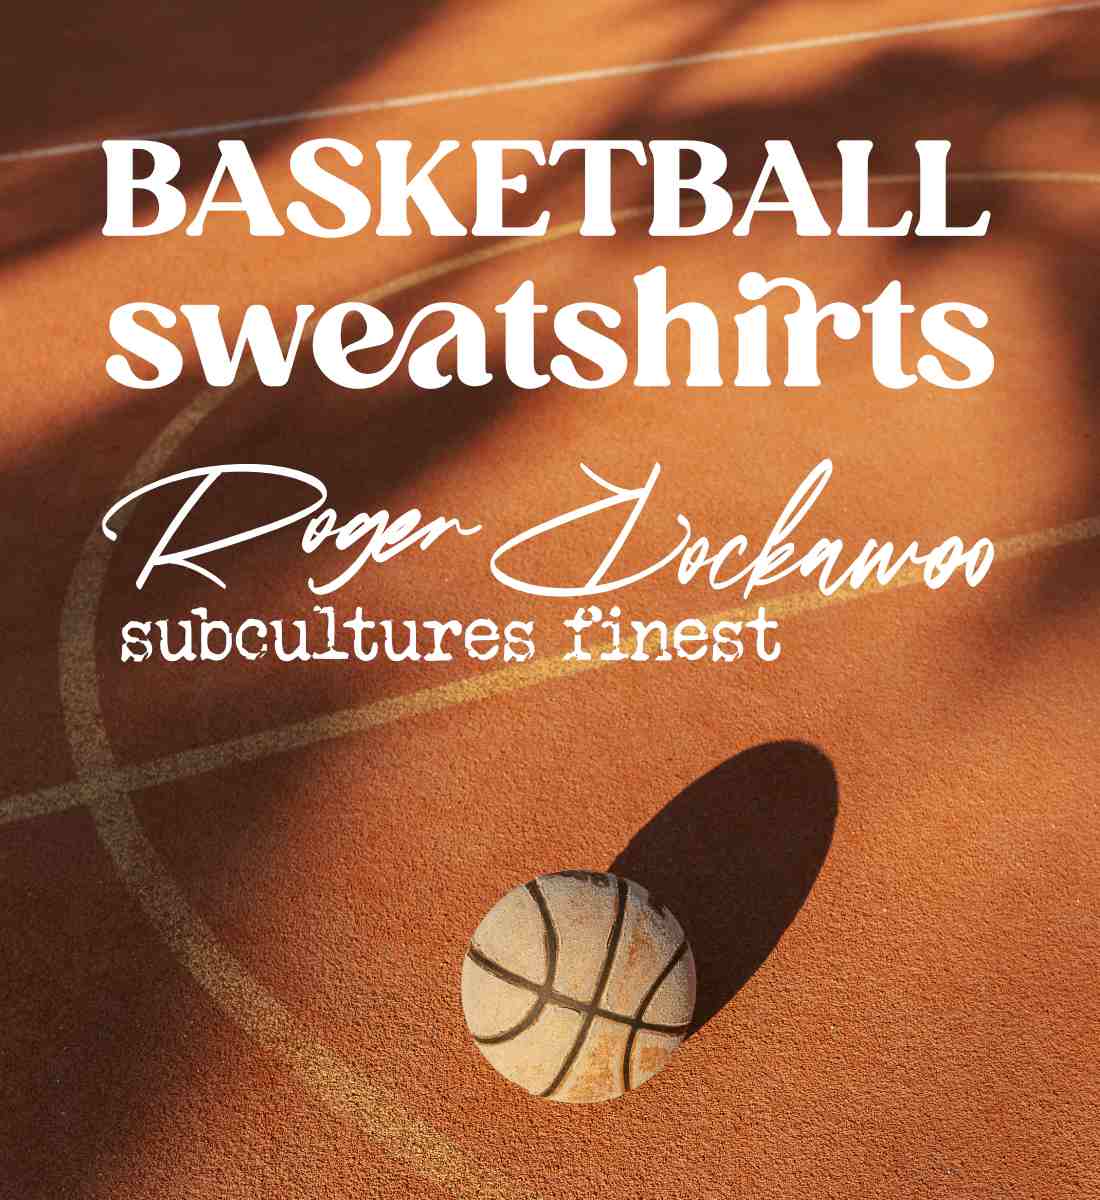 Schwarzes Sweatshirt Unisex für Frauen und Männer bedruckt mit dem Design der Roger Rockawoo Kollektion Basketball 3x3 Downtown